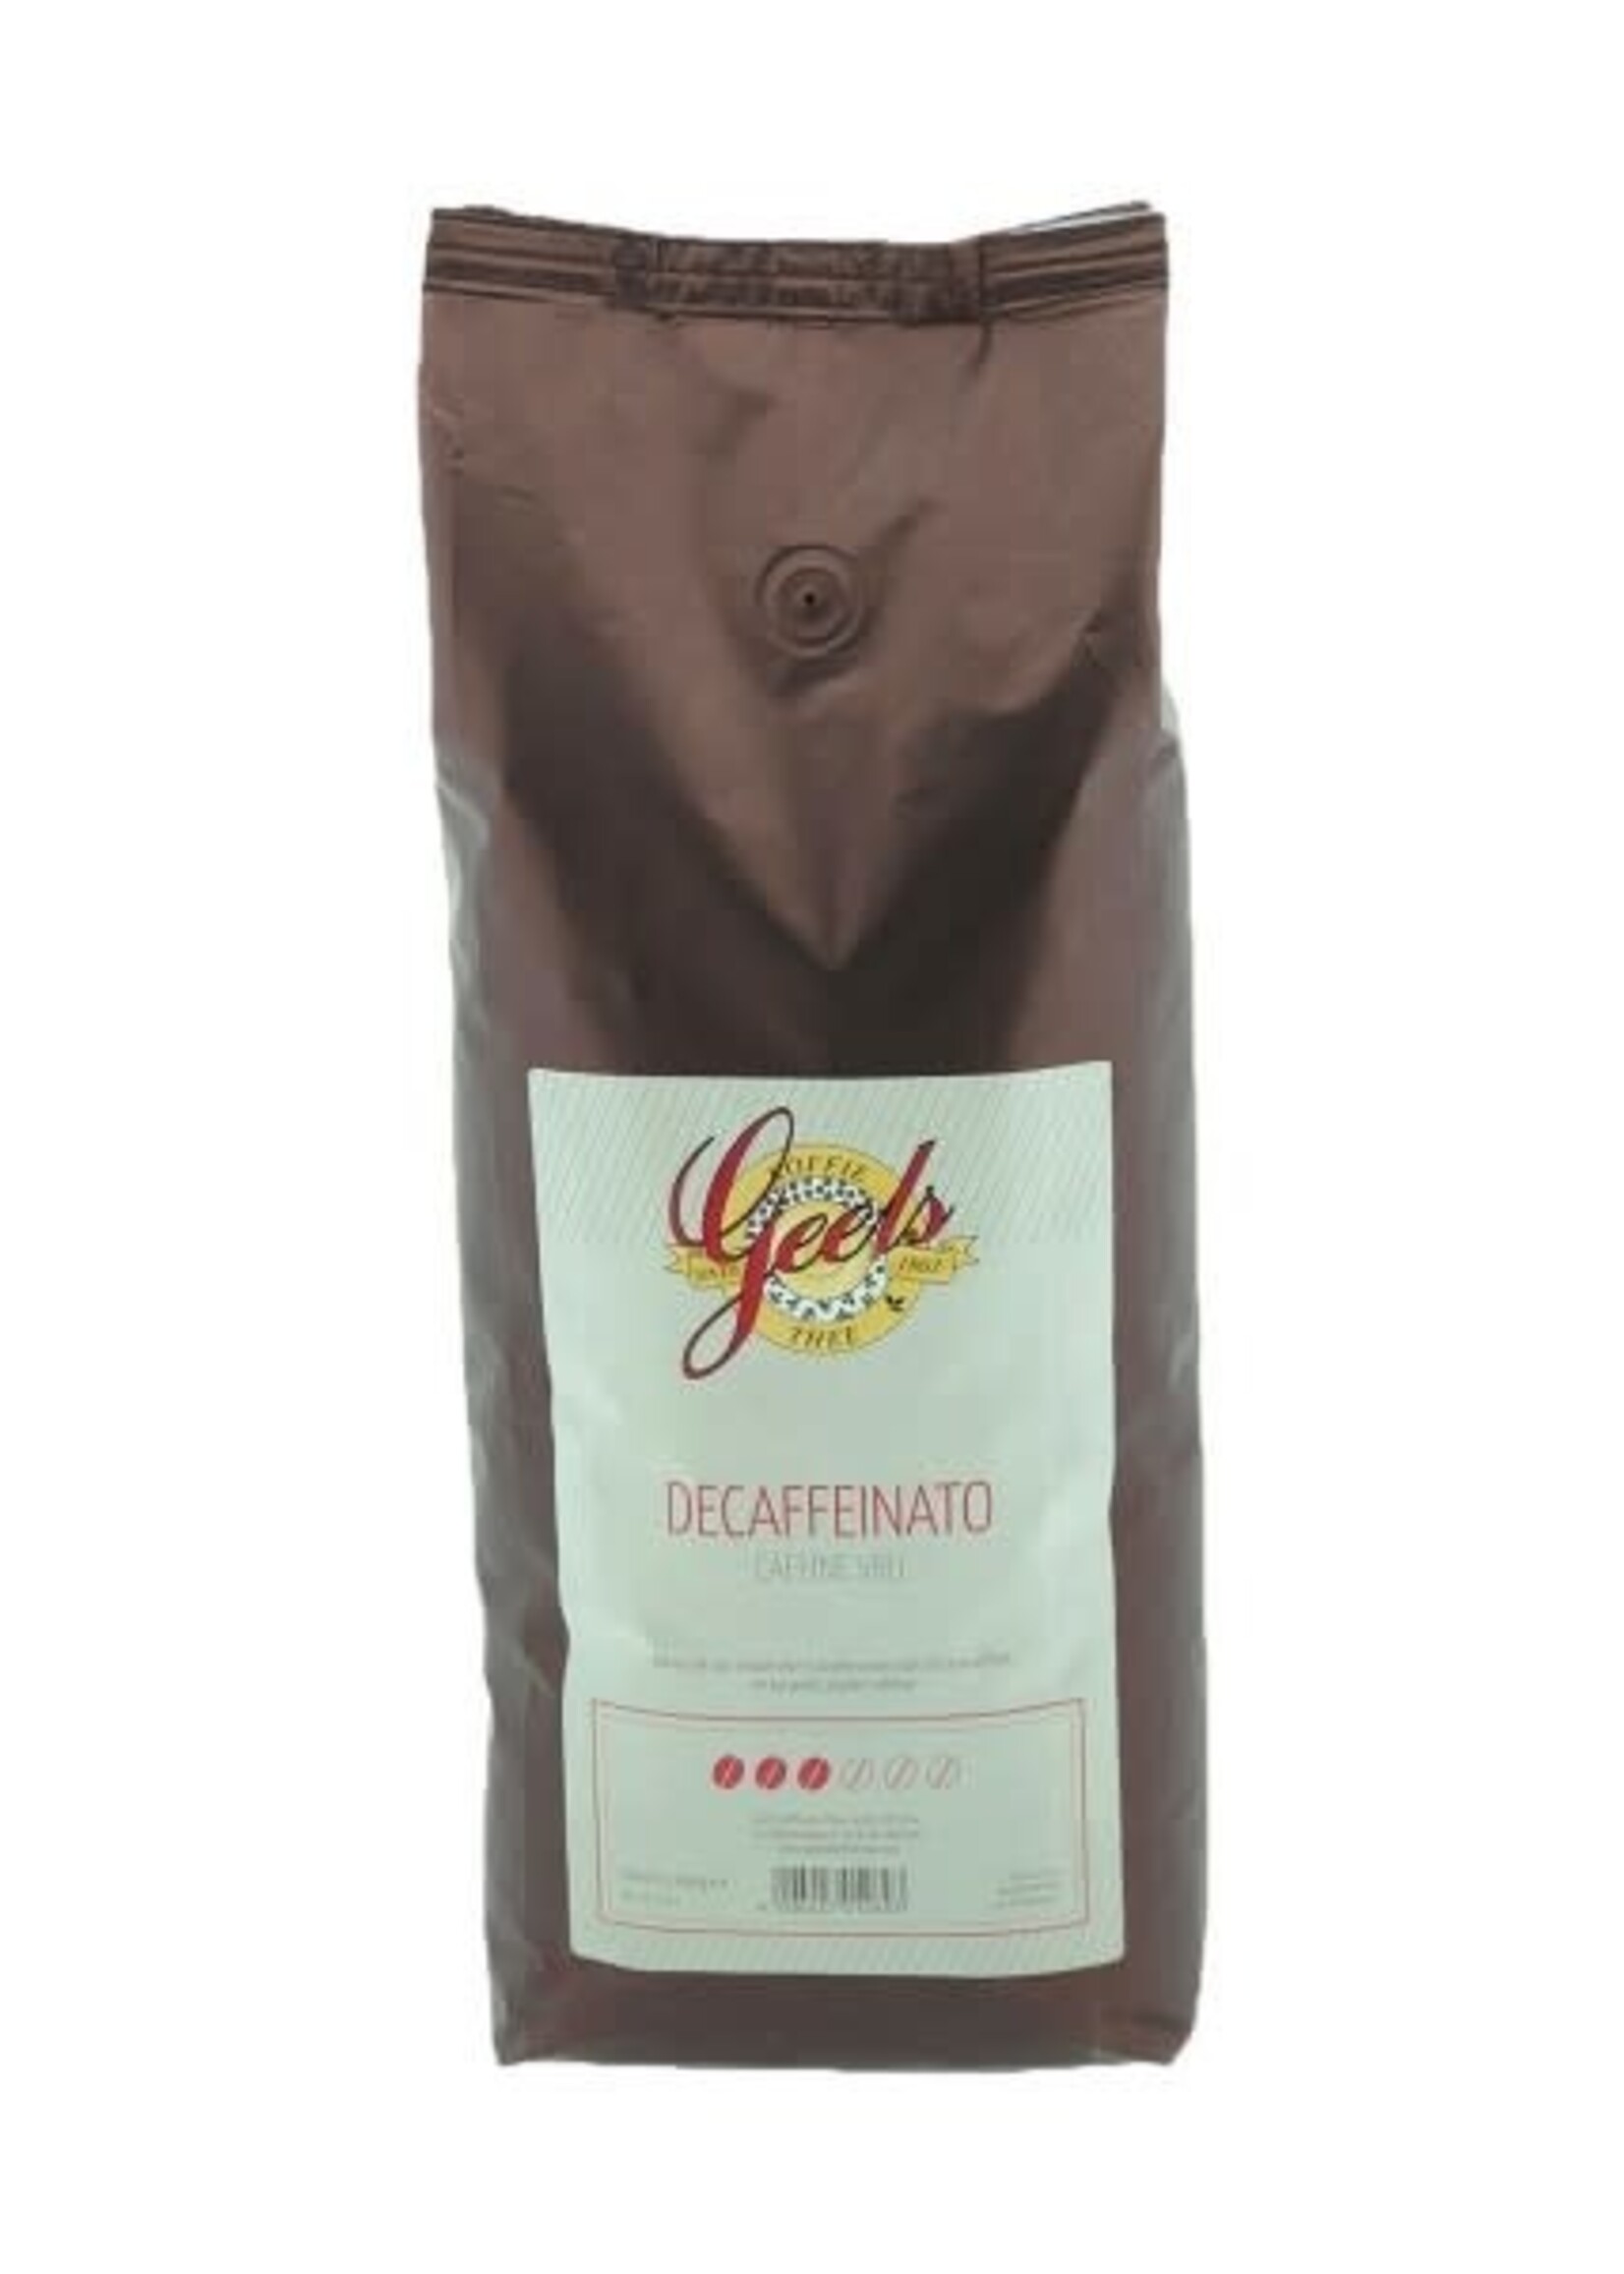 Geels Koffie & Thee 7511 - Café en grains décaféiné 8 x 1 kg